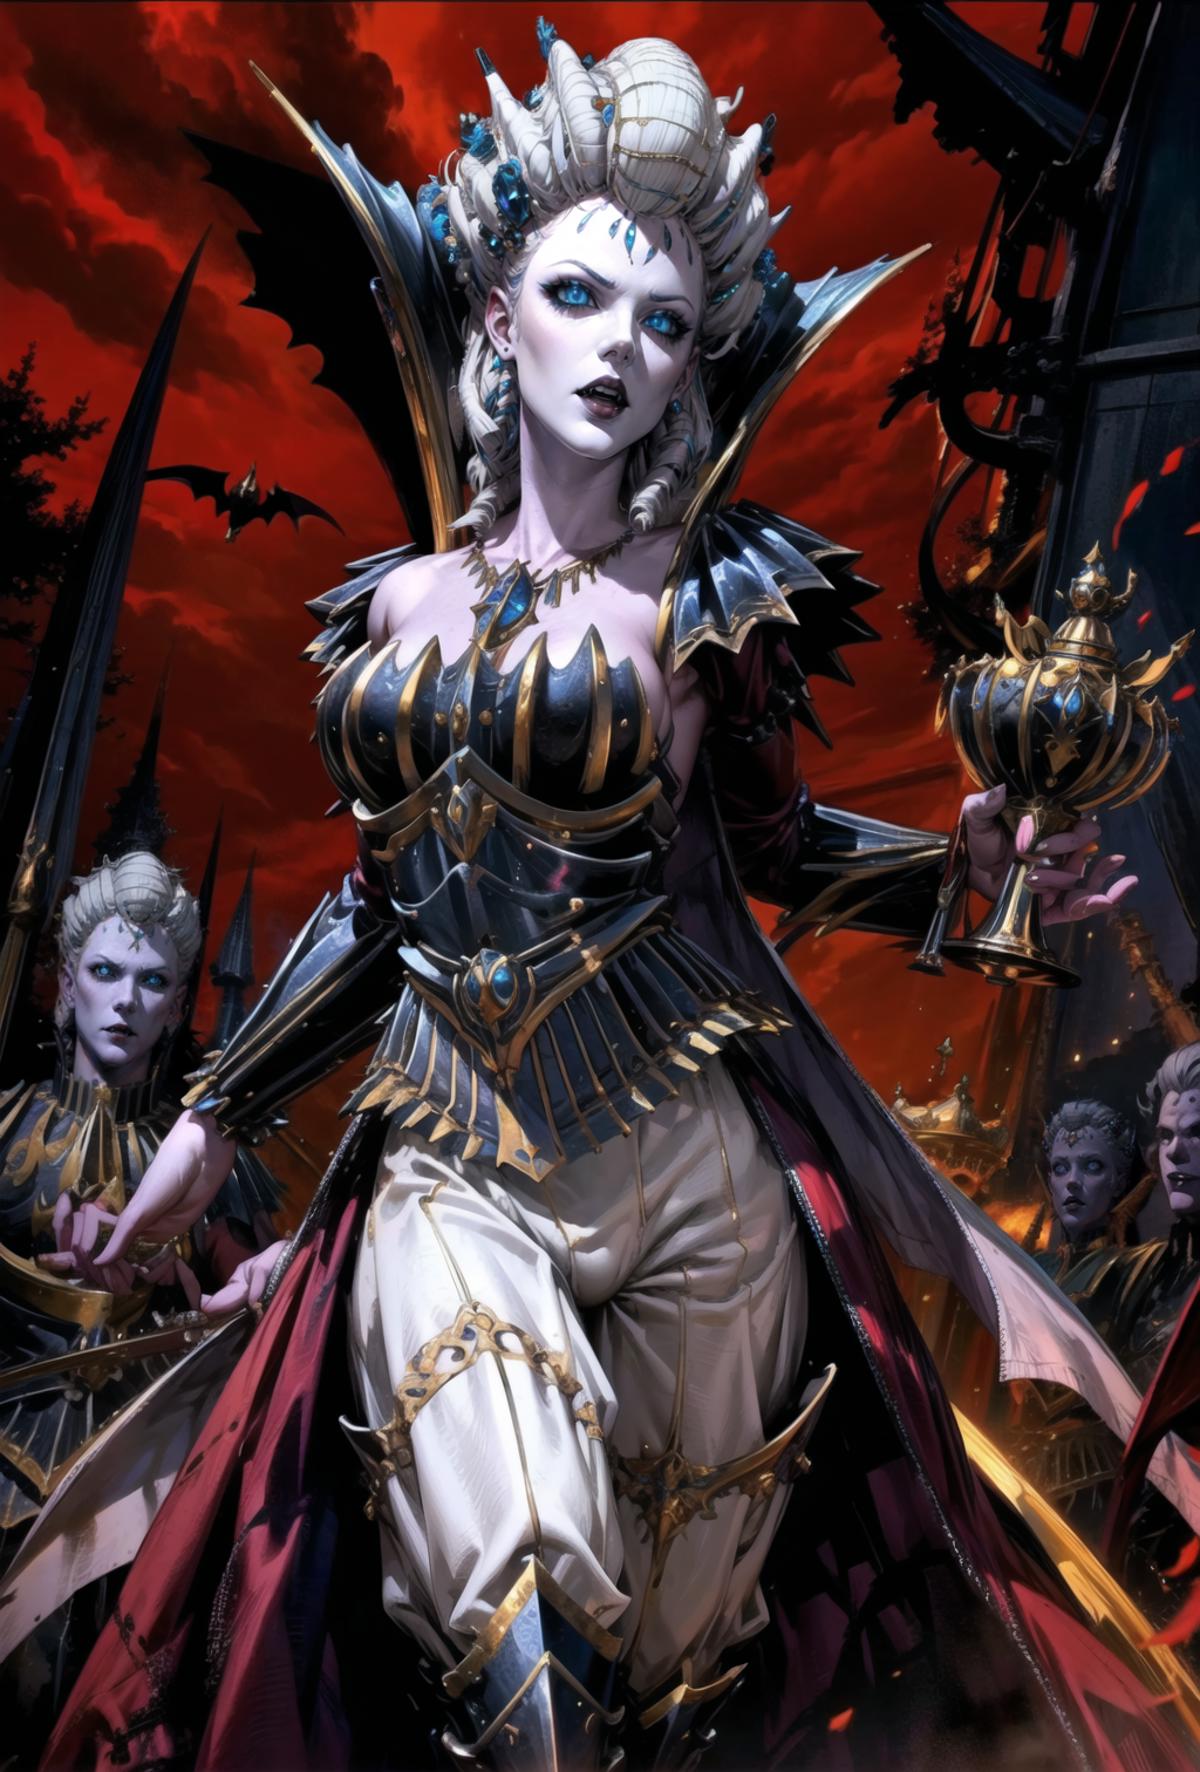 Isabella von Carstein - Warhammer Fantasy image by Fenchurch